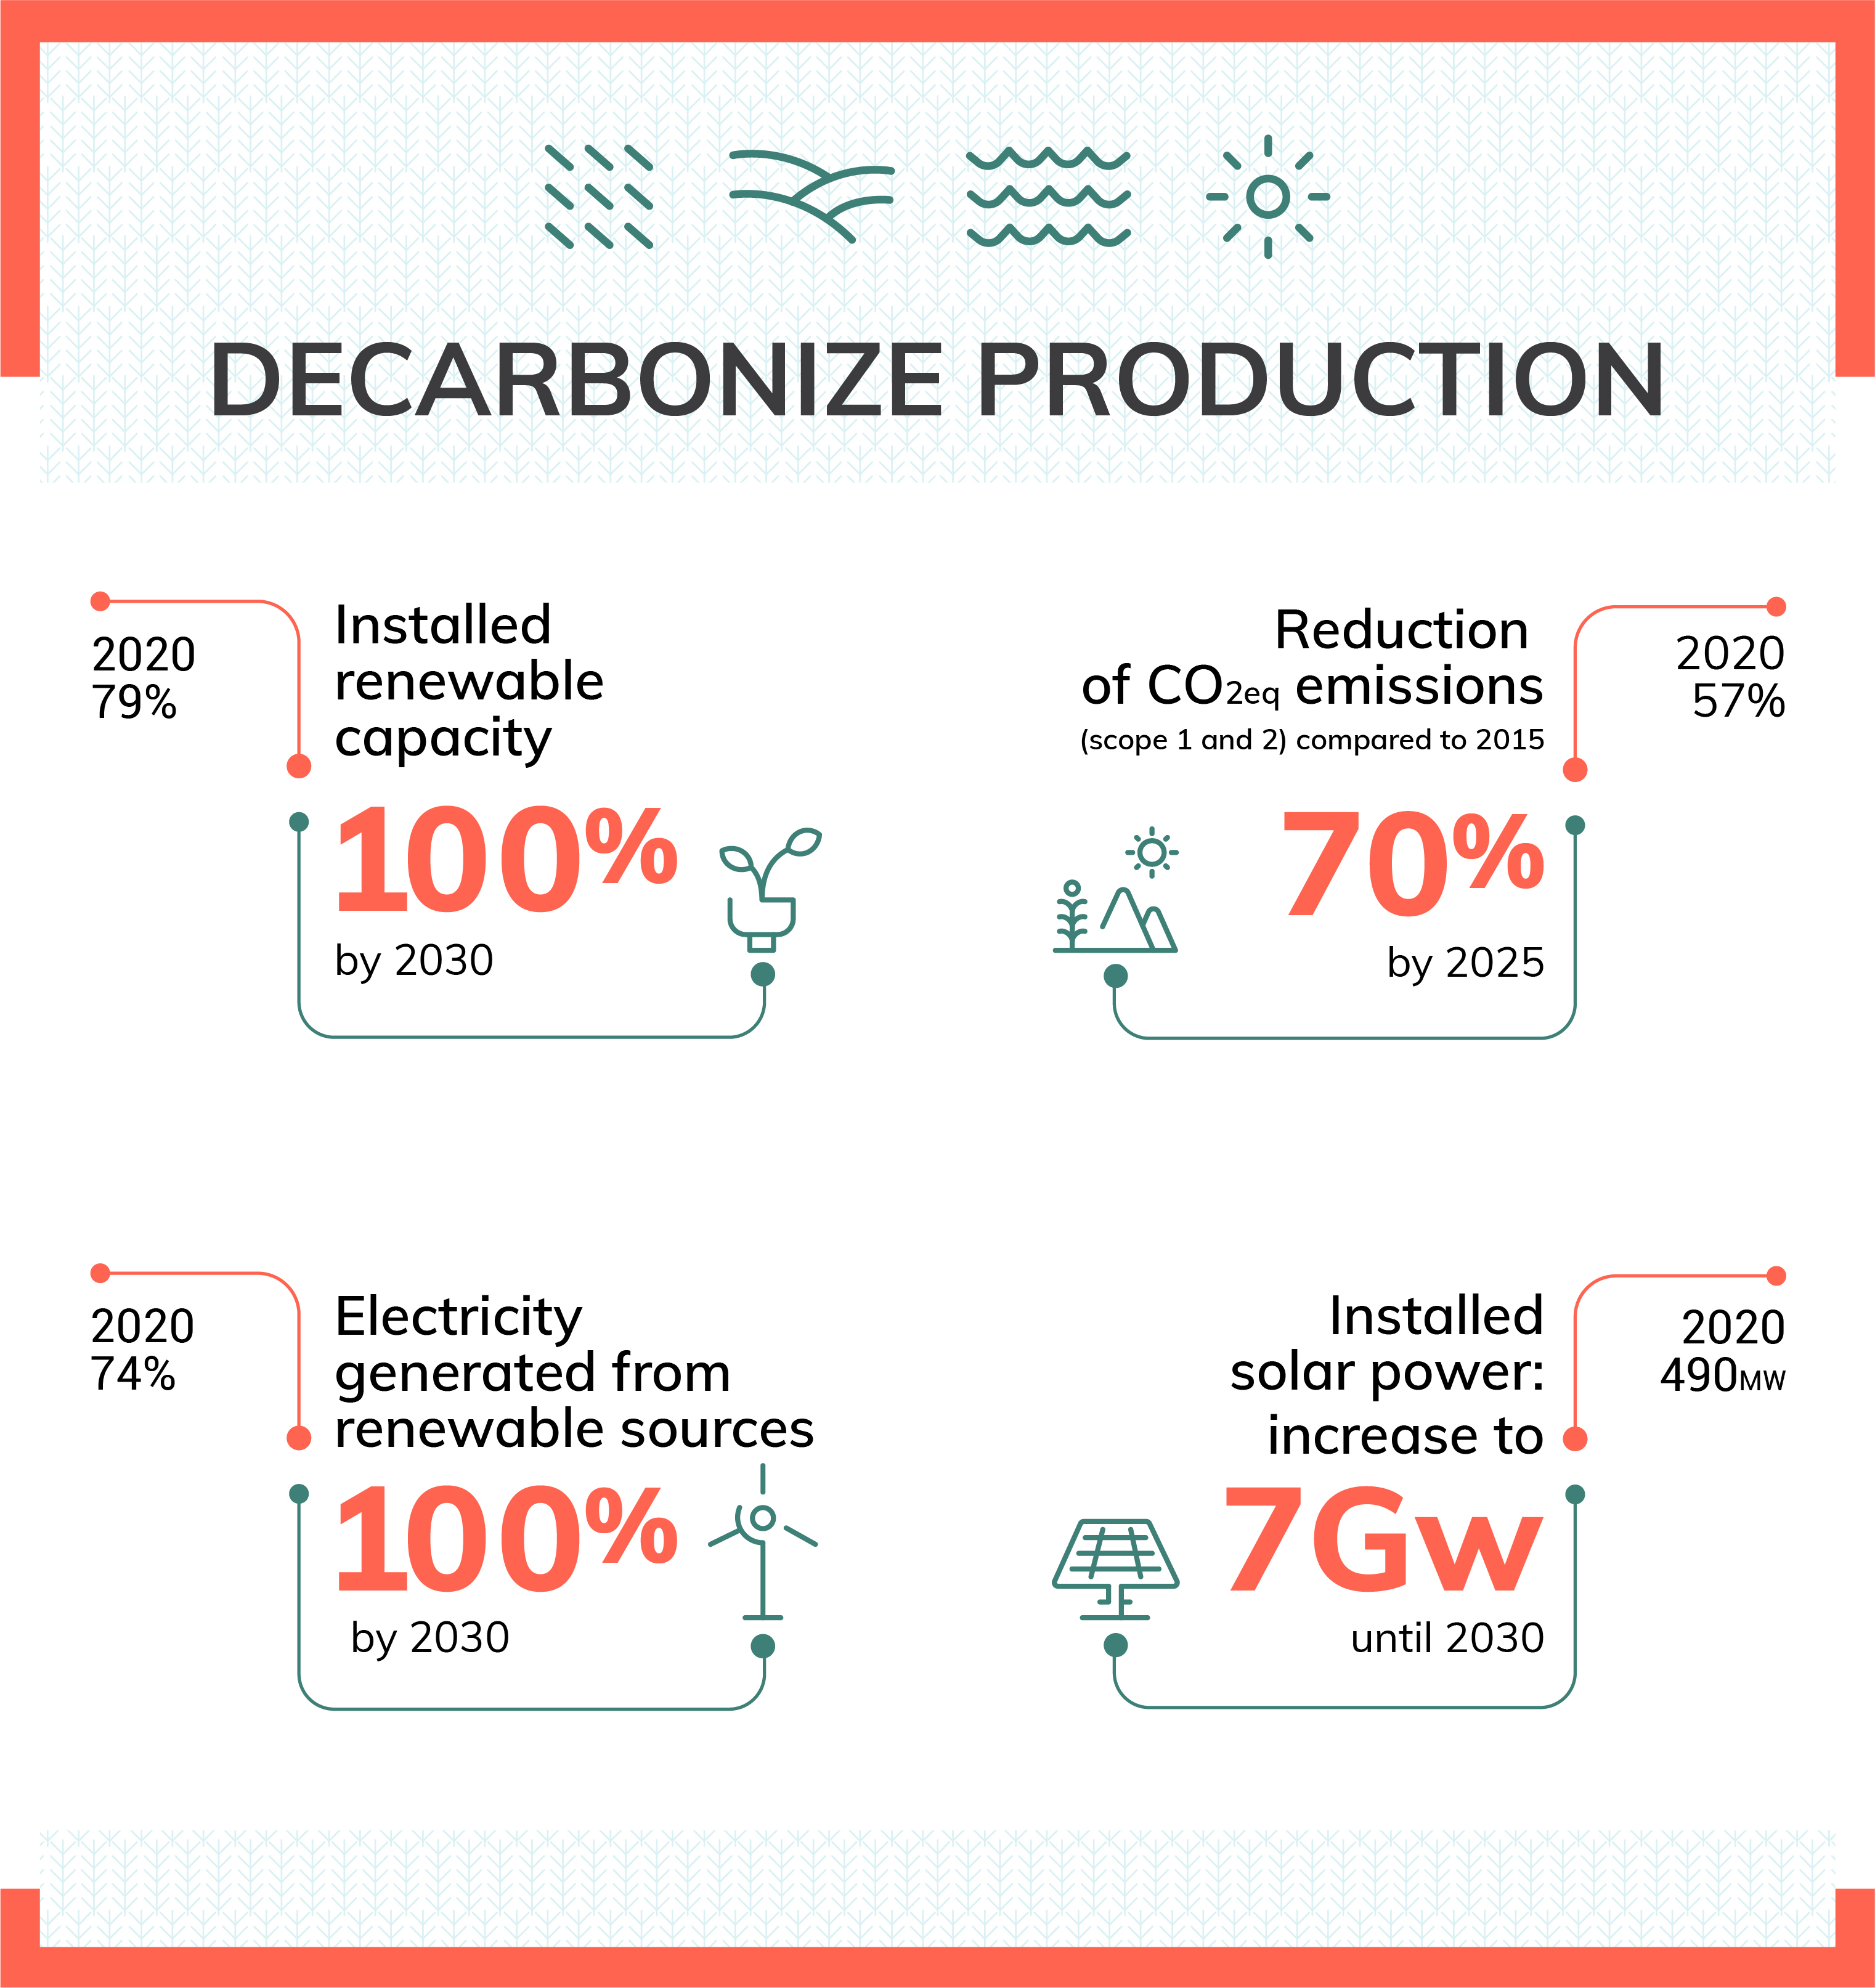 Decarbonize production